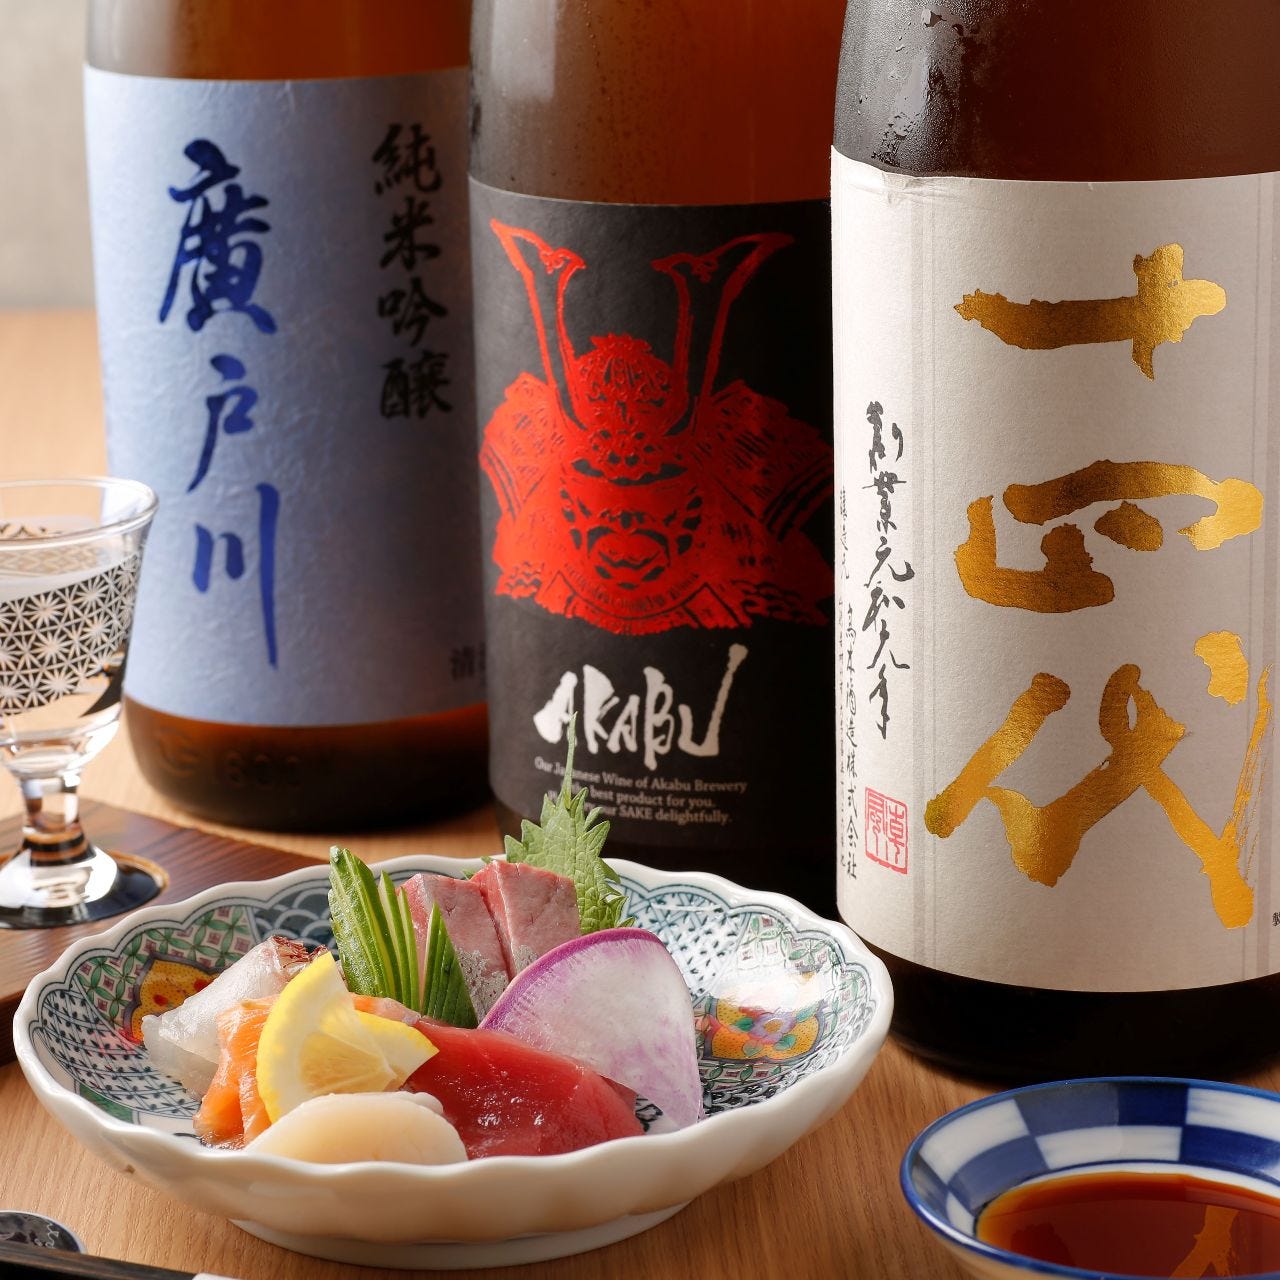 日本酒好きによる
日本酒好きの為の料理